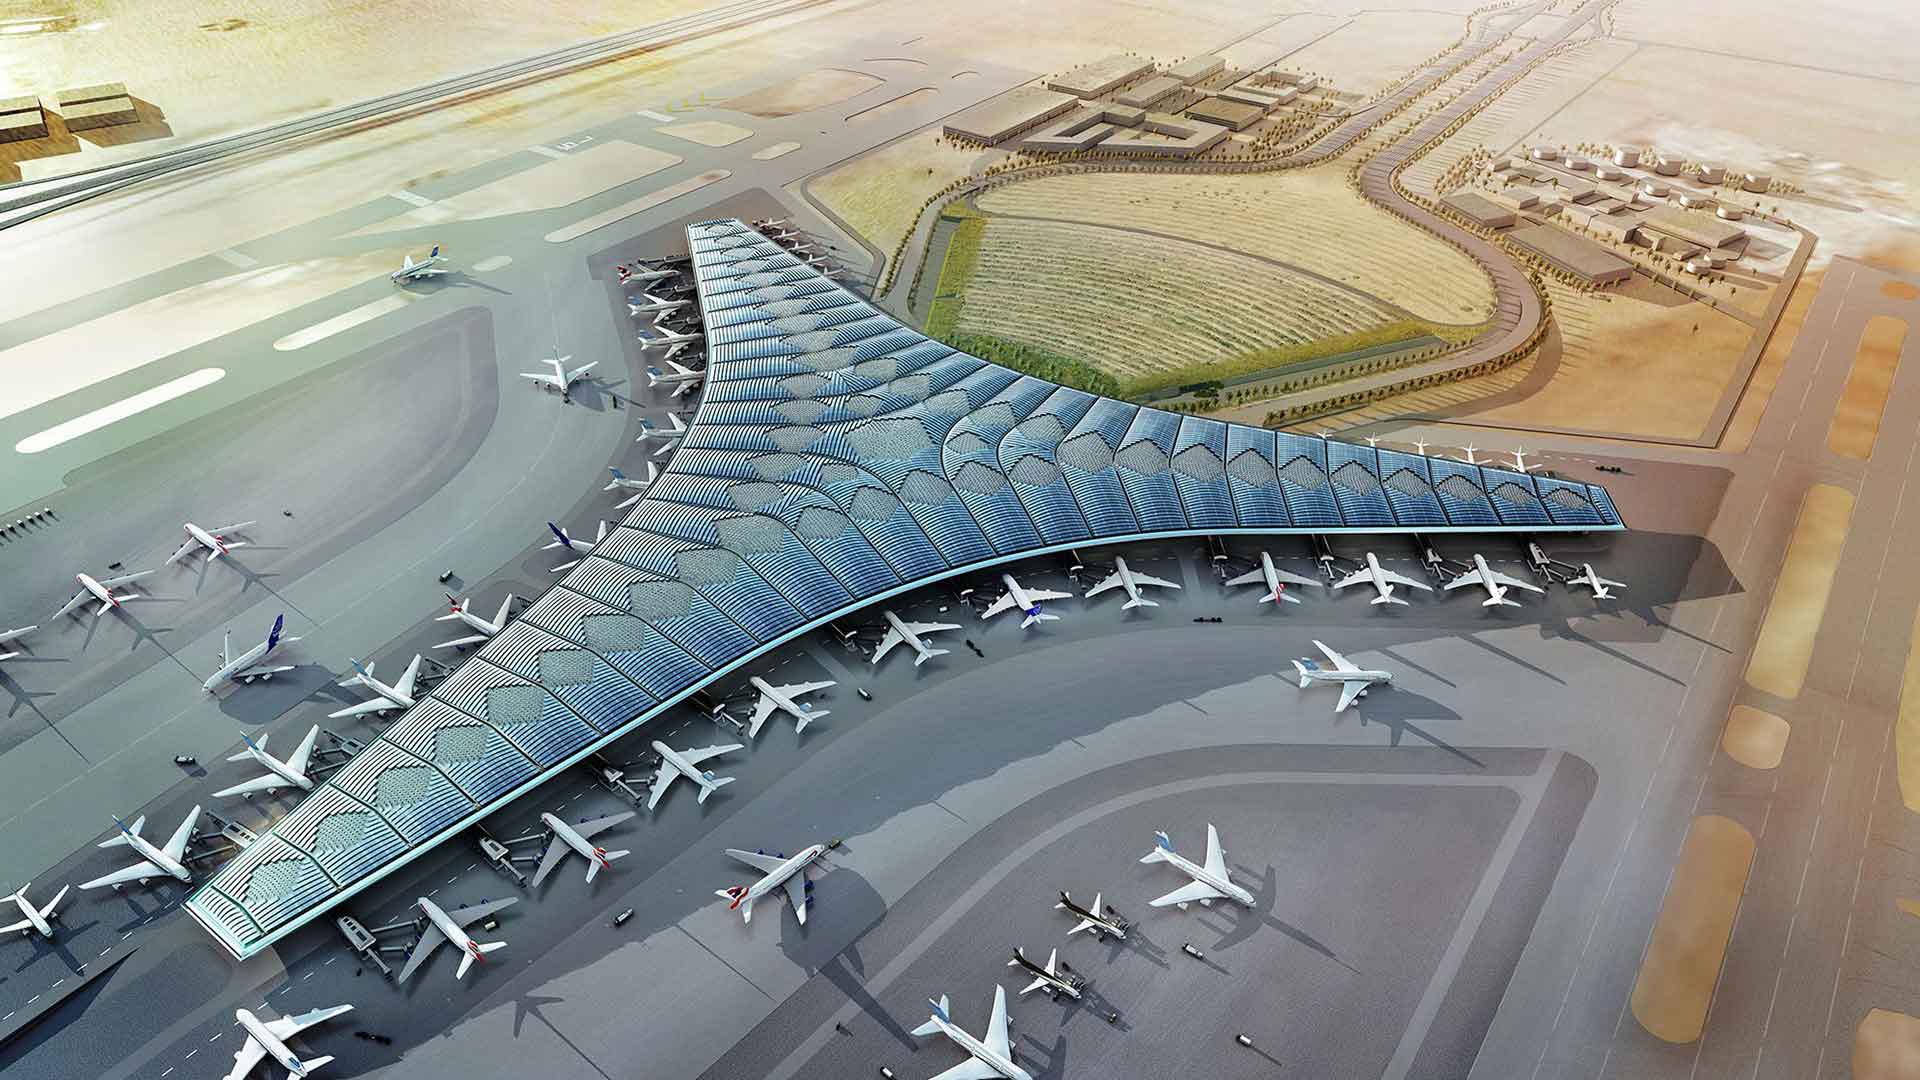 O Aeroporto Internacional do Kuwait é um aeroporto localizado em Farwaniya, Kuwait, 15,5 km (9,6 milhas) ao sul da cidade do Kuwait, cobrindo uma área de 37,7 quilômetros quadrados (14,6 milhas quadradas).É o centro das companhias aéreas da Al Jazeera e do Kuwait.